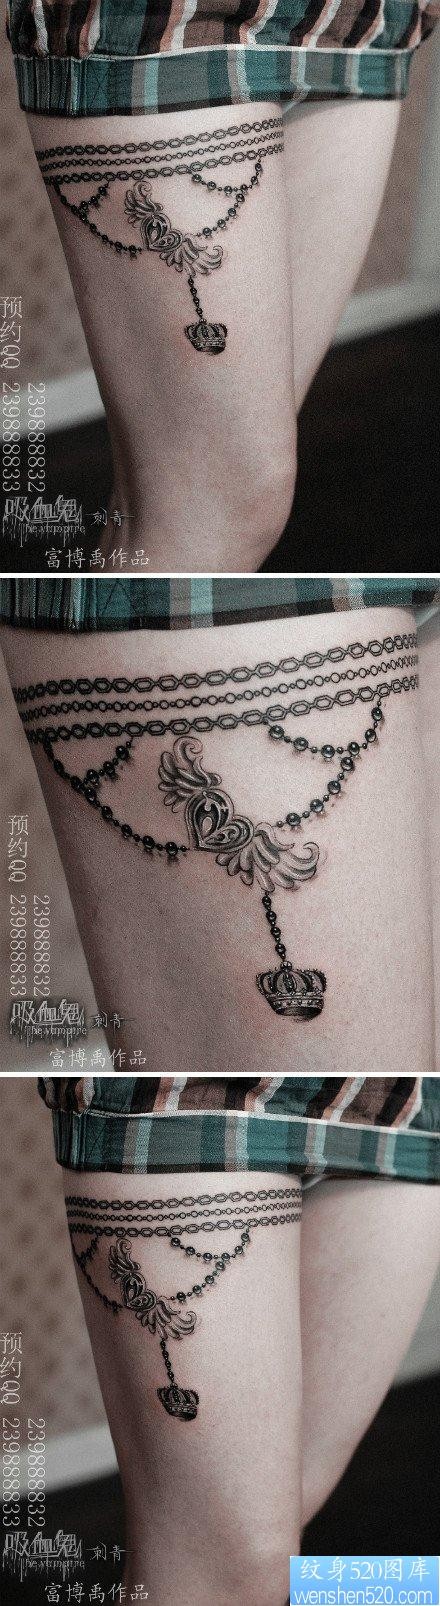 美女腿部精美的链条吊链纹身图片